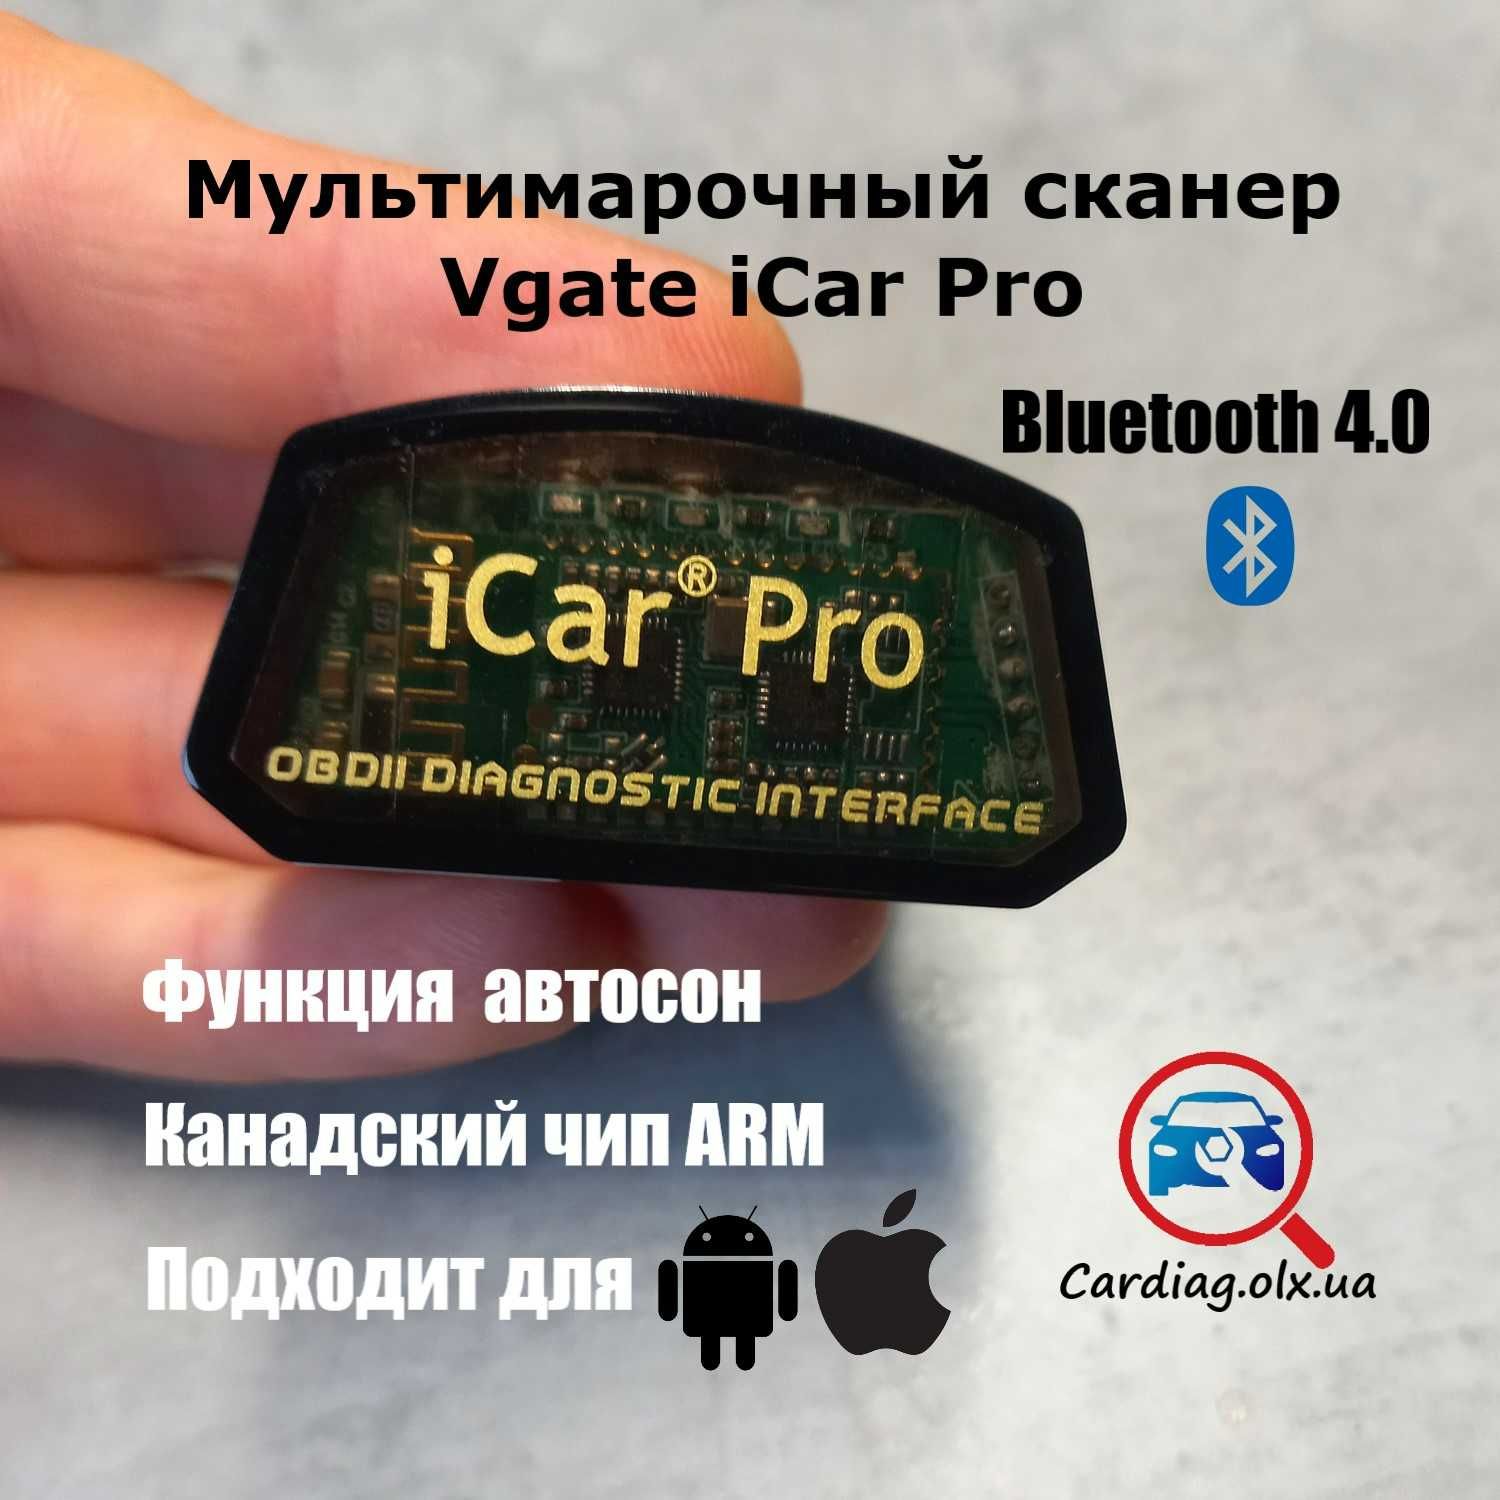 Сканер авто від Vgate iCar Pro. Блютуз 4.0. Автосон. Оригінал.Гарантія